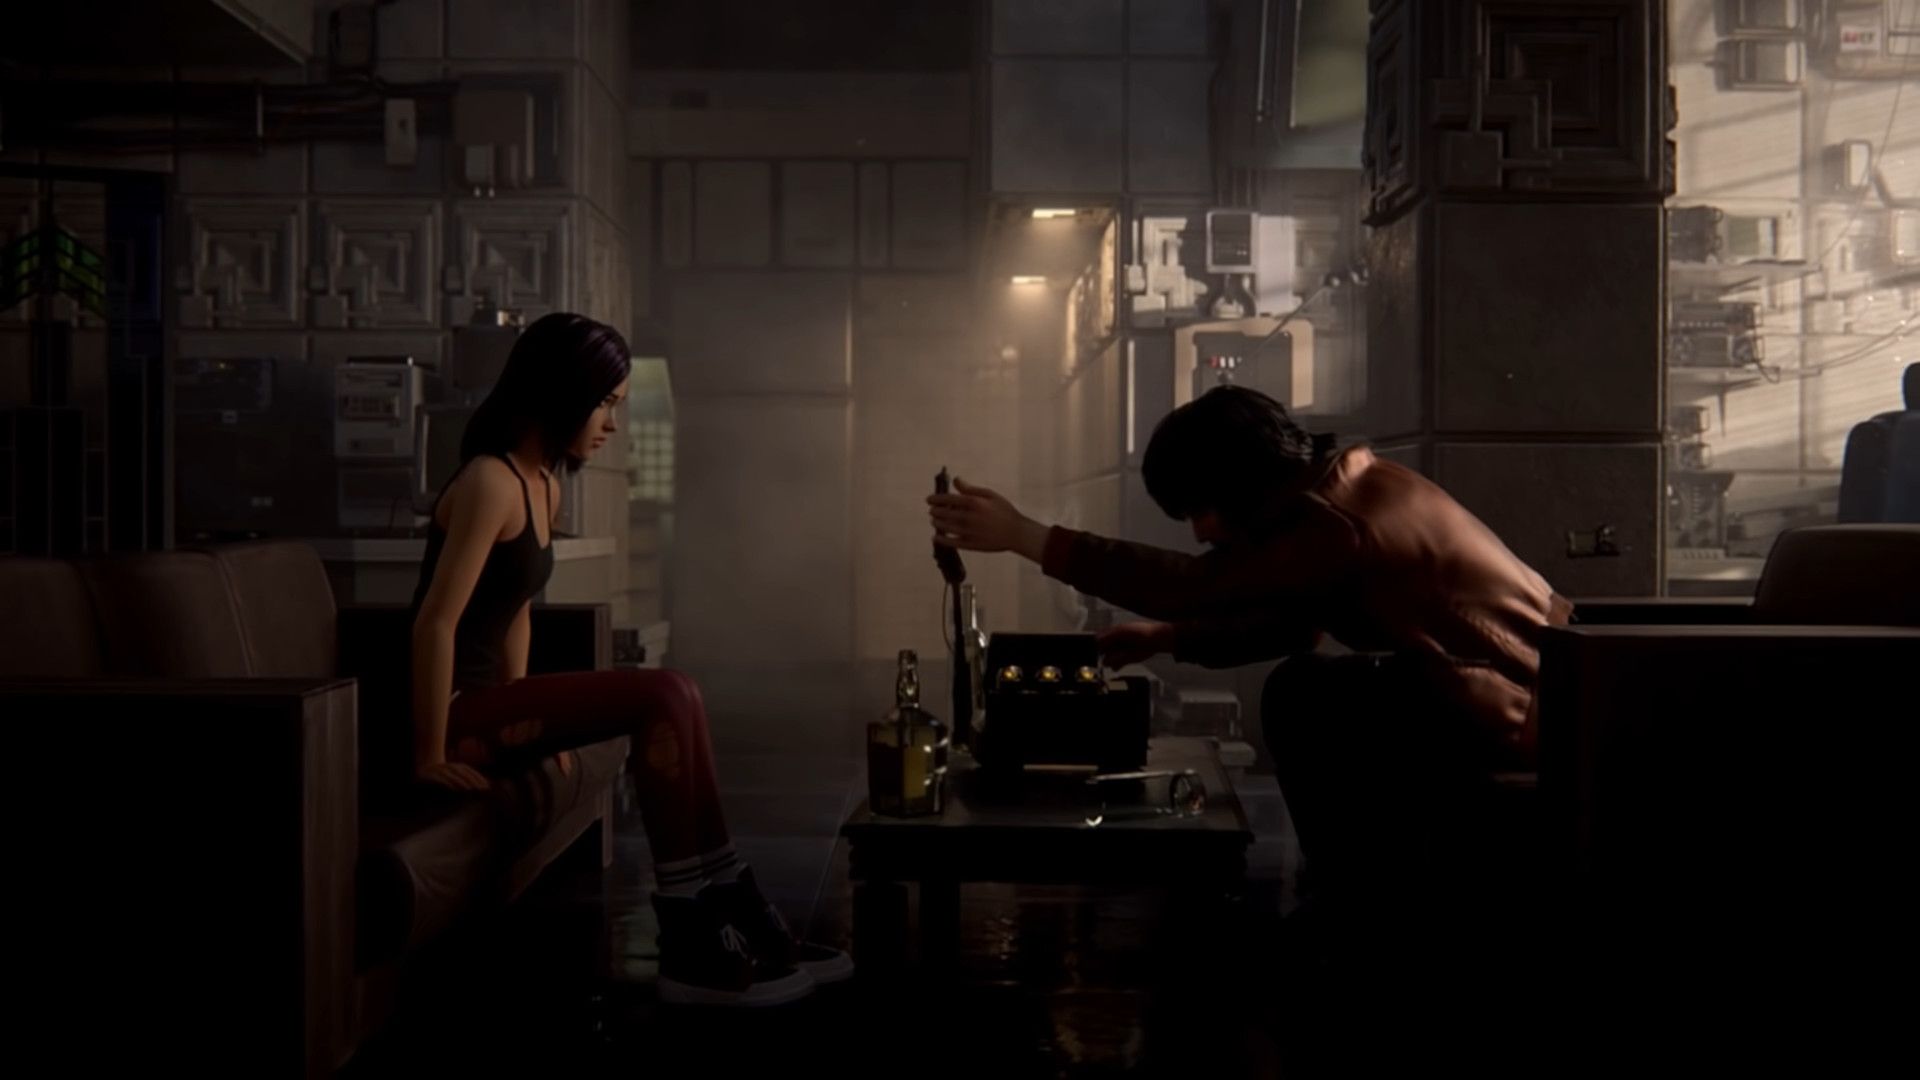 Blade Runner: Black Lotus Actress Has Emotional Connection To Original Film